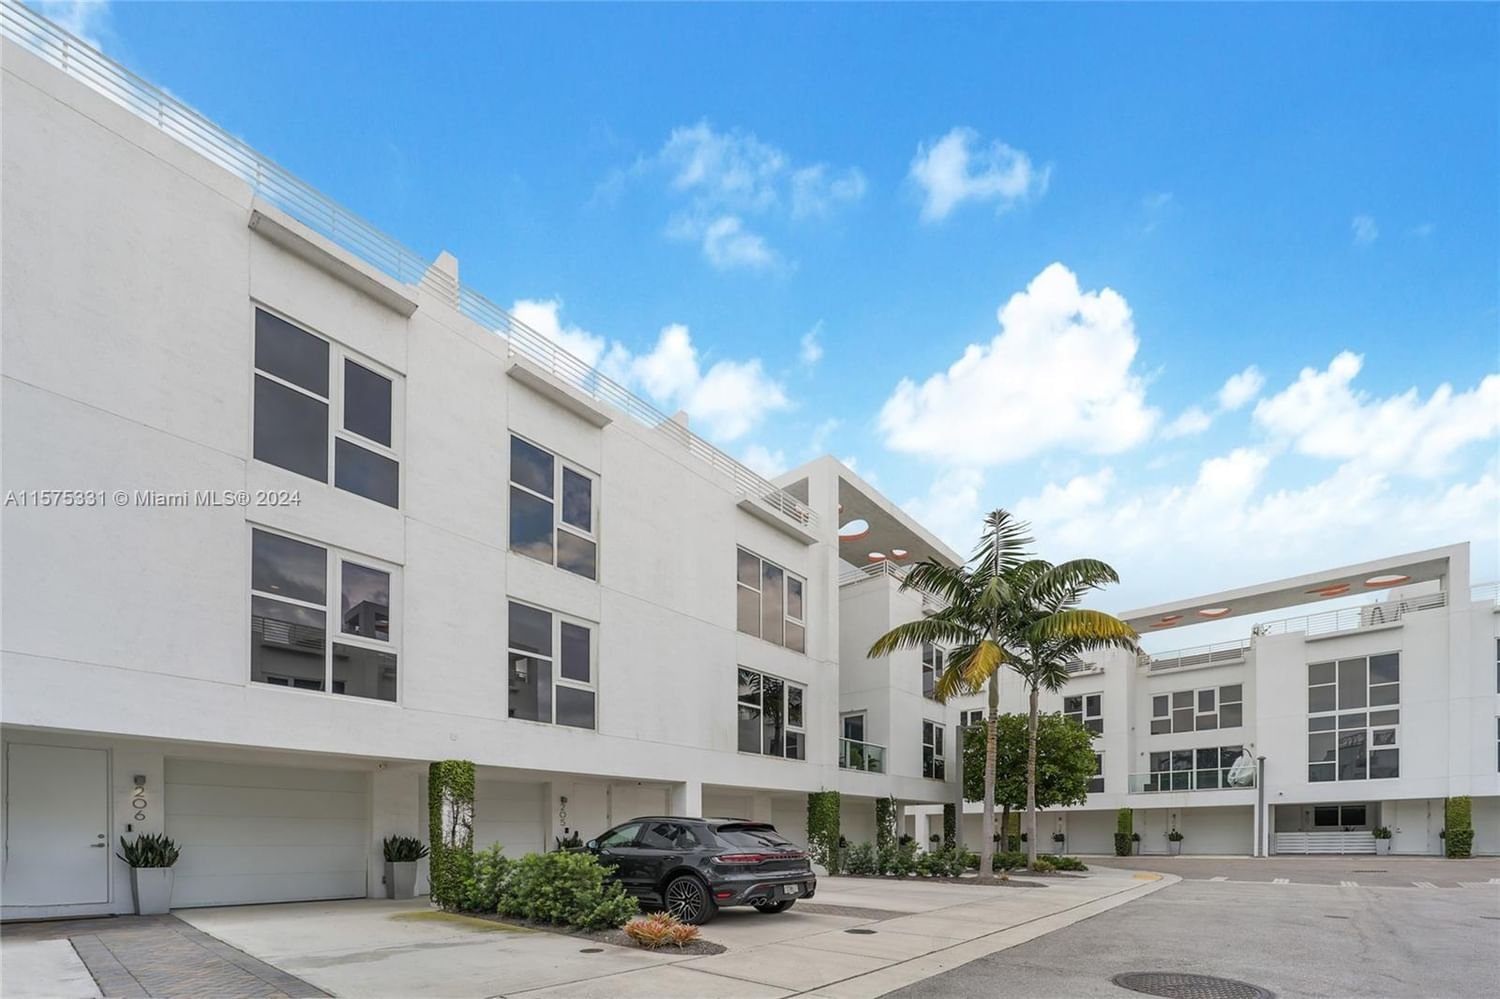 Real estate property located at 455 39th St #206, Miami-Dade County, ONE BAY CONDO, Miami, FL